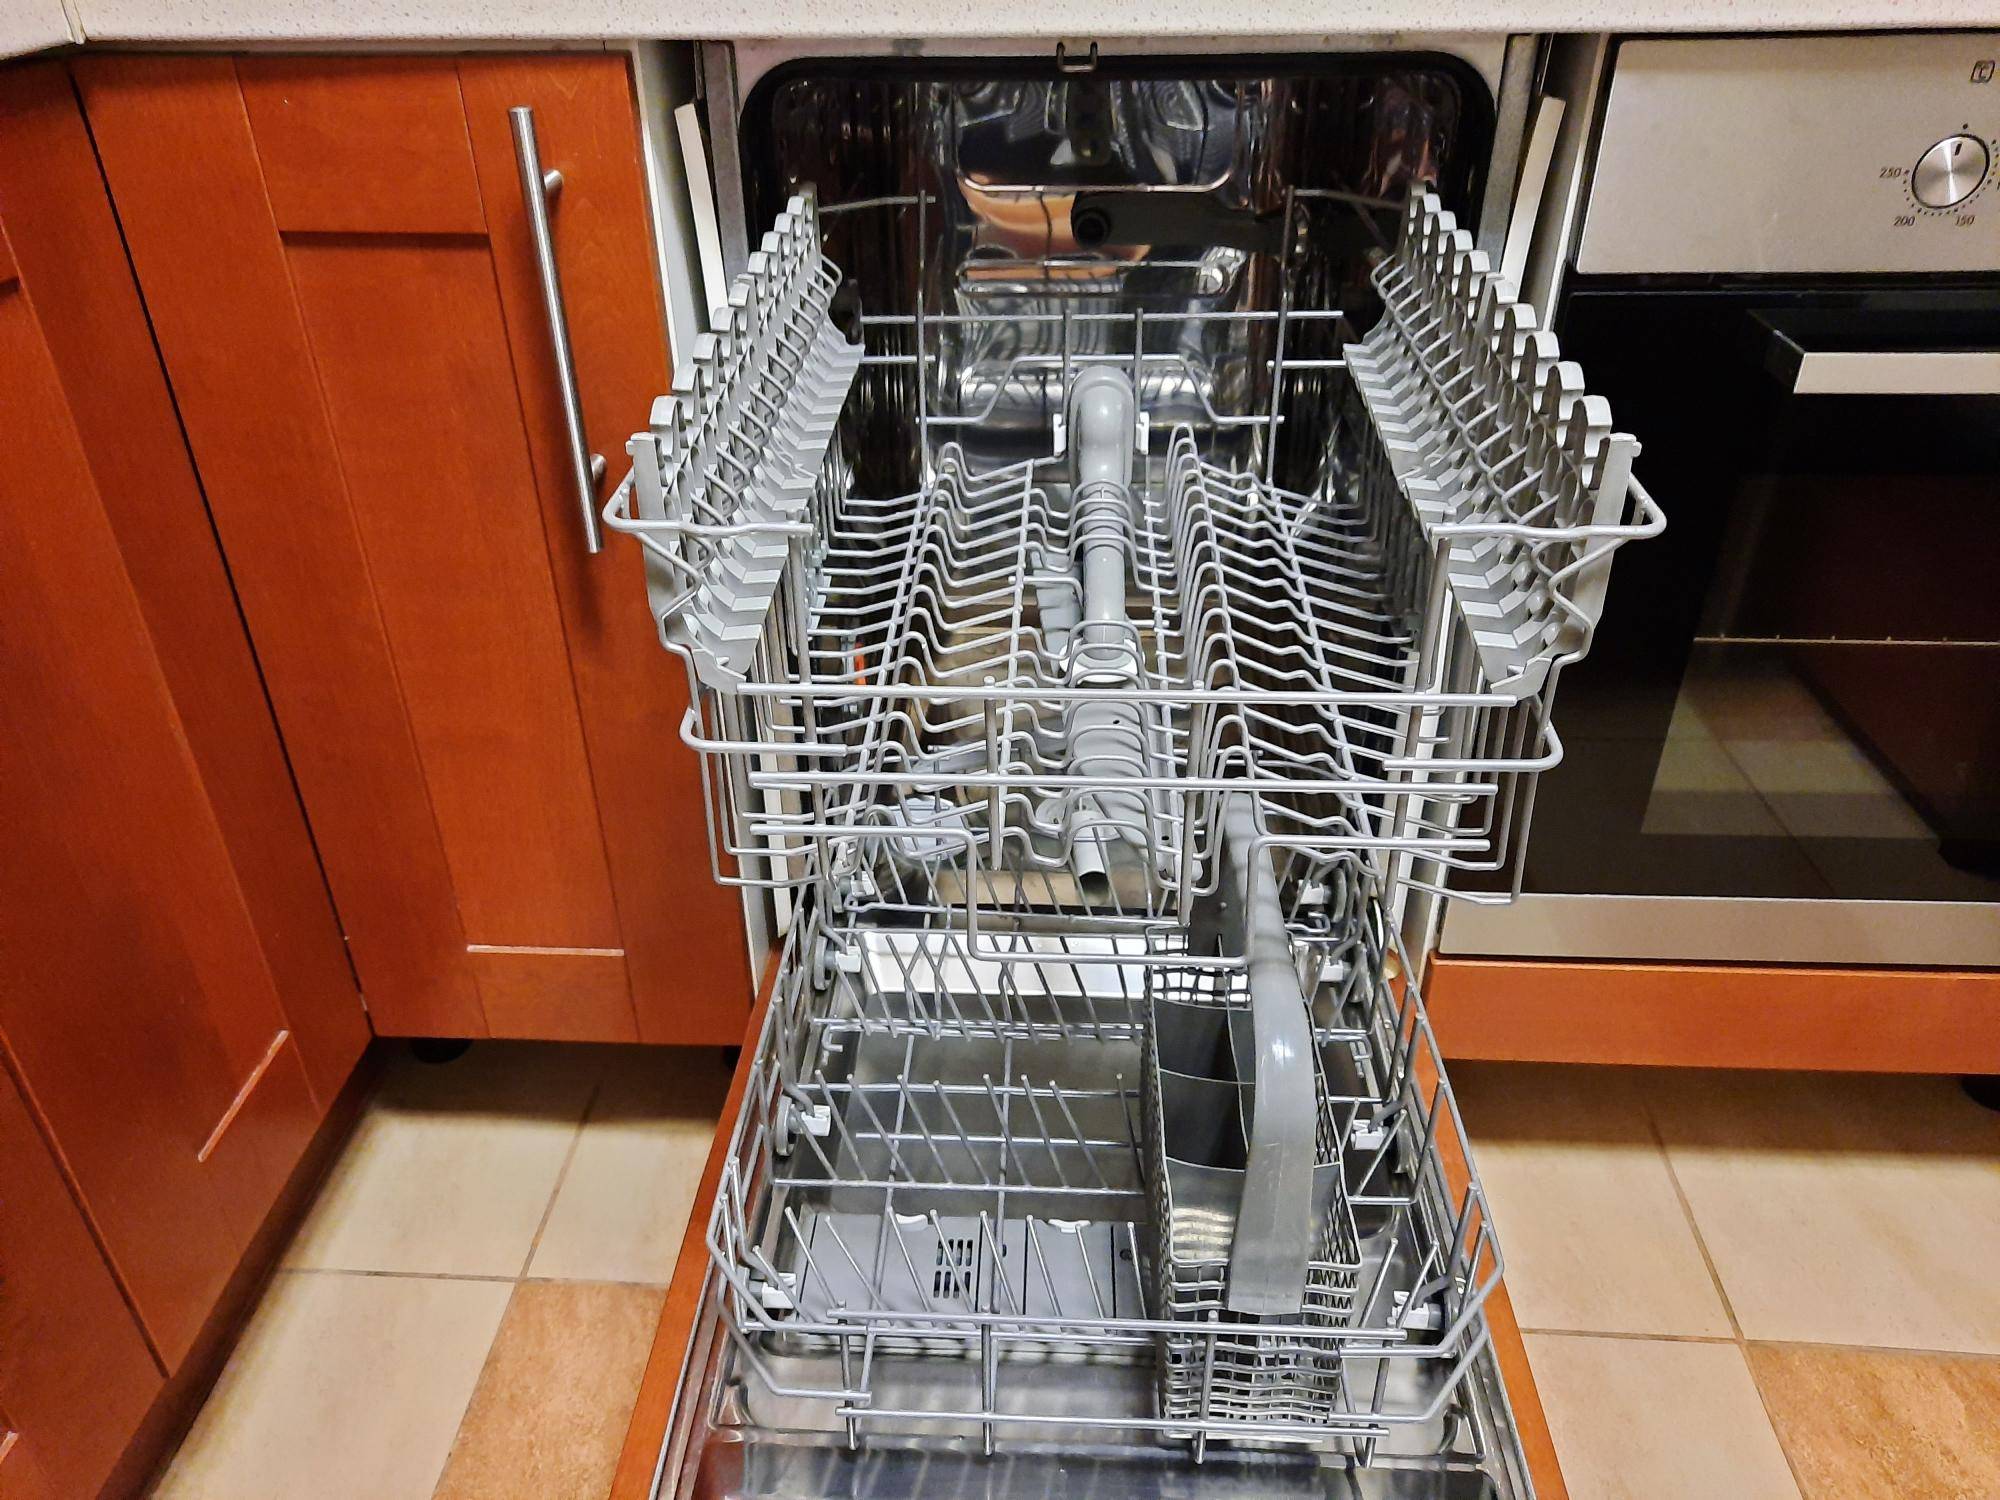 Выбор посудомоечной машины 45 см: топ лучших по отзывам 2020